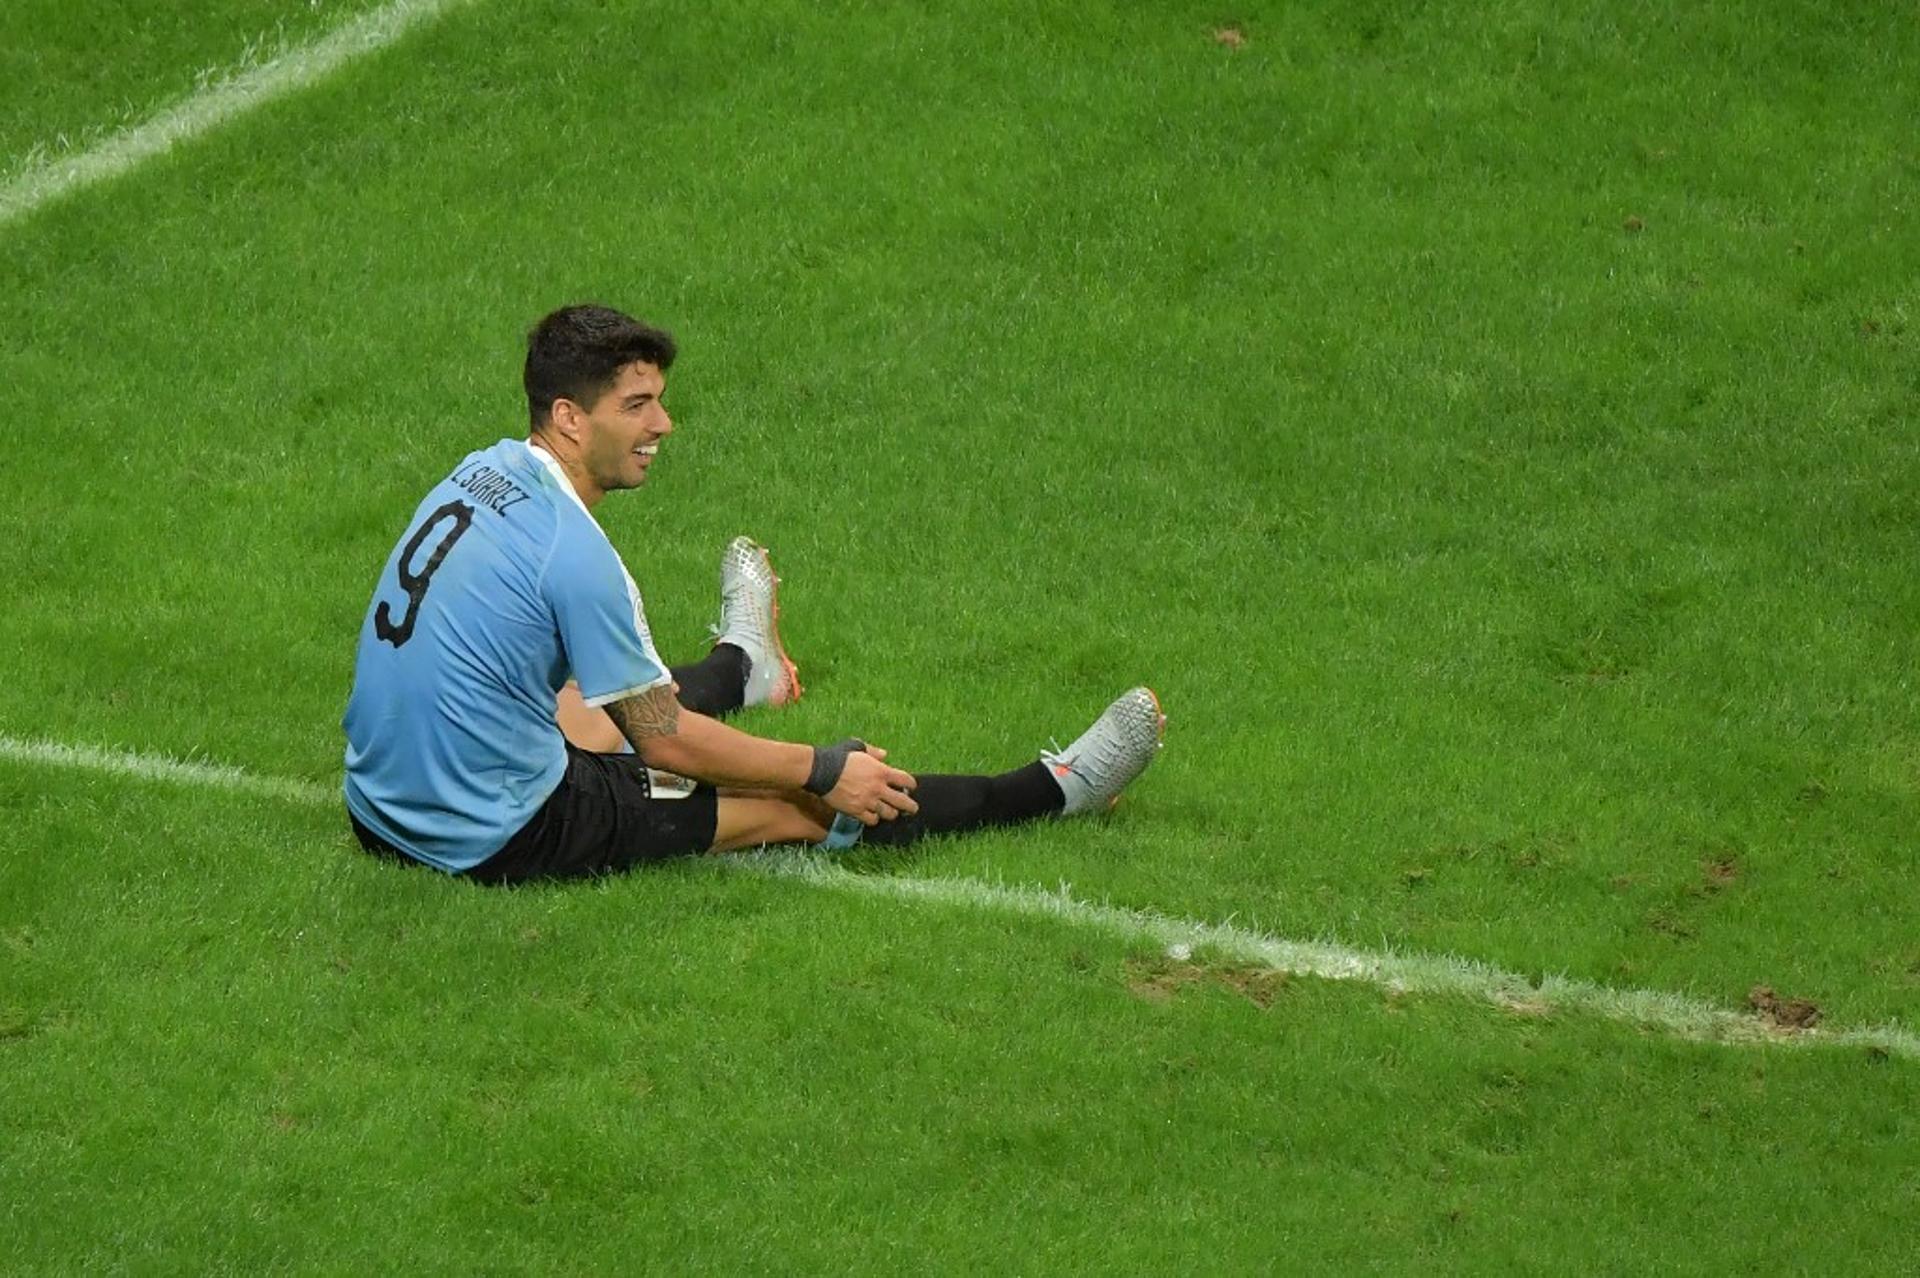 O Uruguai decepcionou e foi eliminado precocemente na Copa América. Nas quartas de final, a equipe não conseguiu vencer a defesa peruana e viu um de seus principais astros, o atacante Suárez, perdeu pênalti que acabou sendo decisivo (notas por Gabriel Rodrigues)&nbsp;